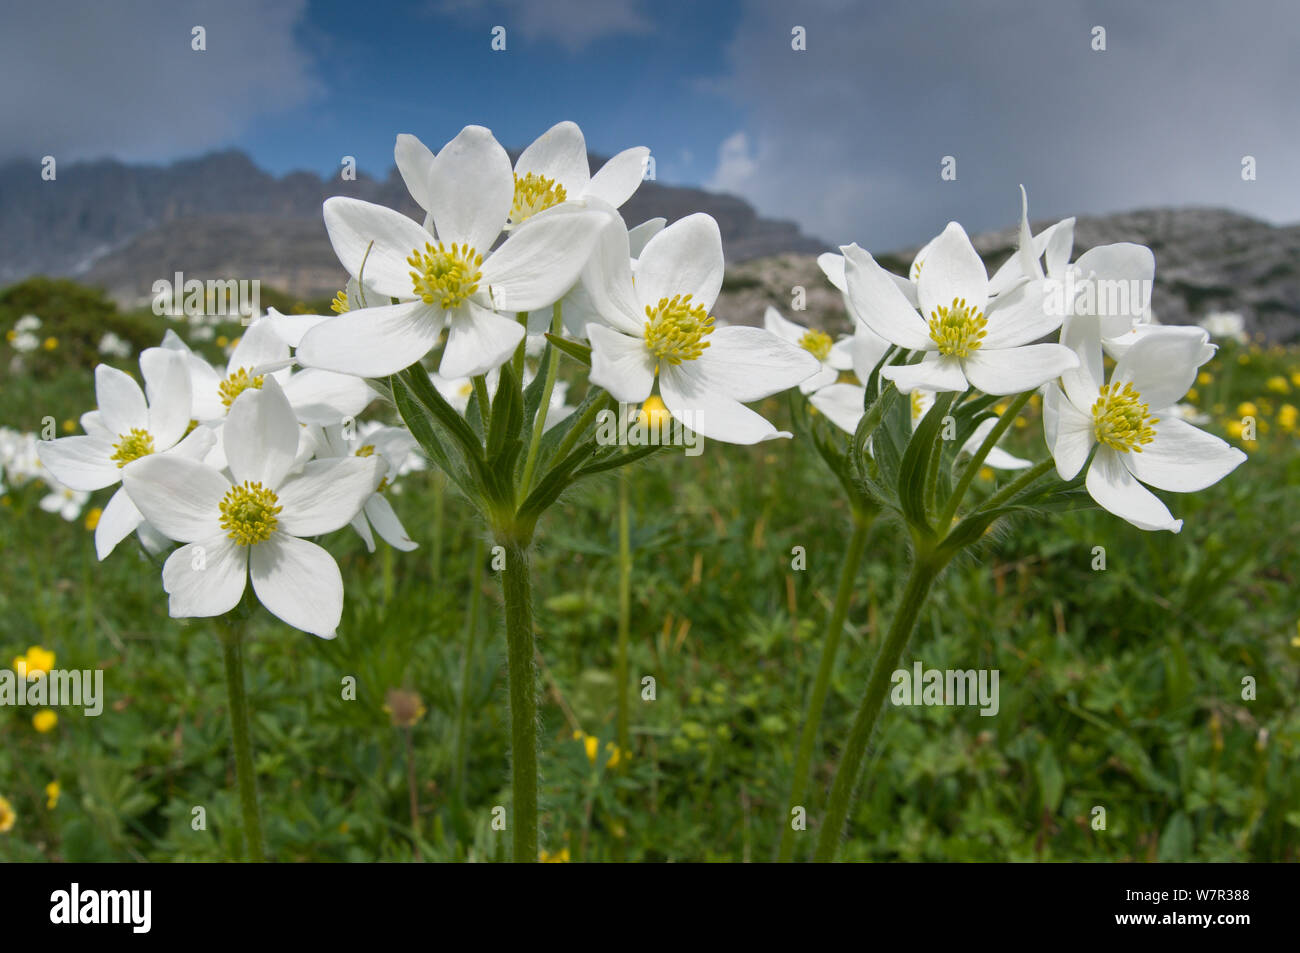 Narzisse Blüten Anemone (Anemone narcissiflora) in Blume, Monte Spinale, alpine Zone, Madonna di Campiglio, Dolomiten, Italien, Juli Stockfoto